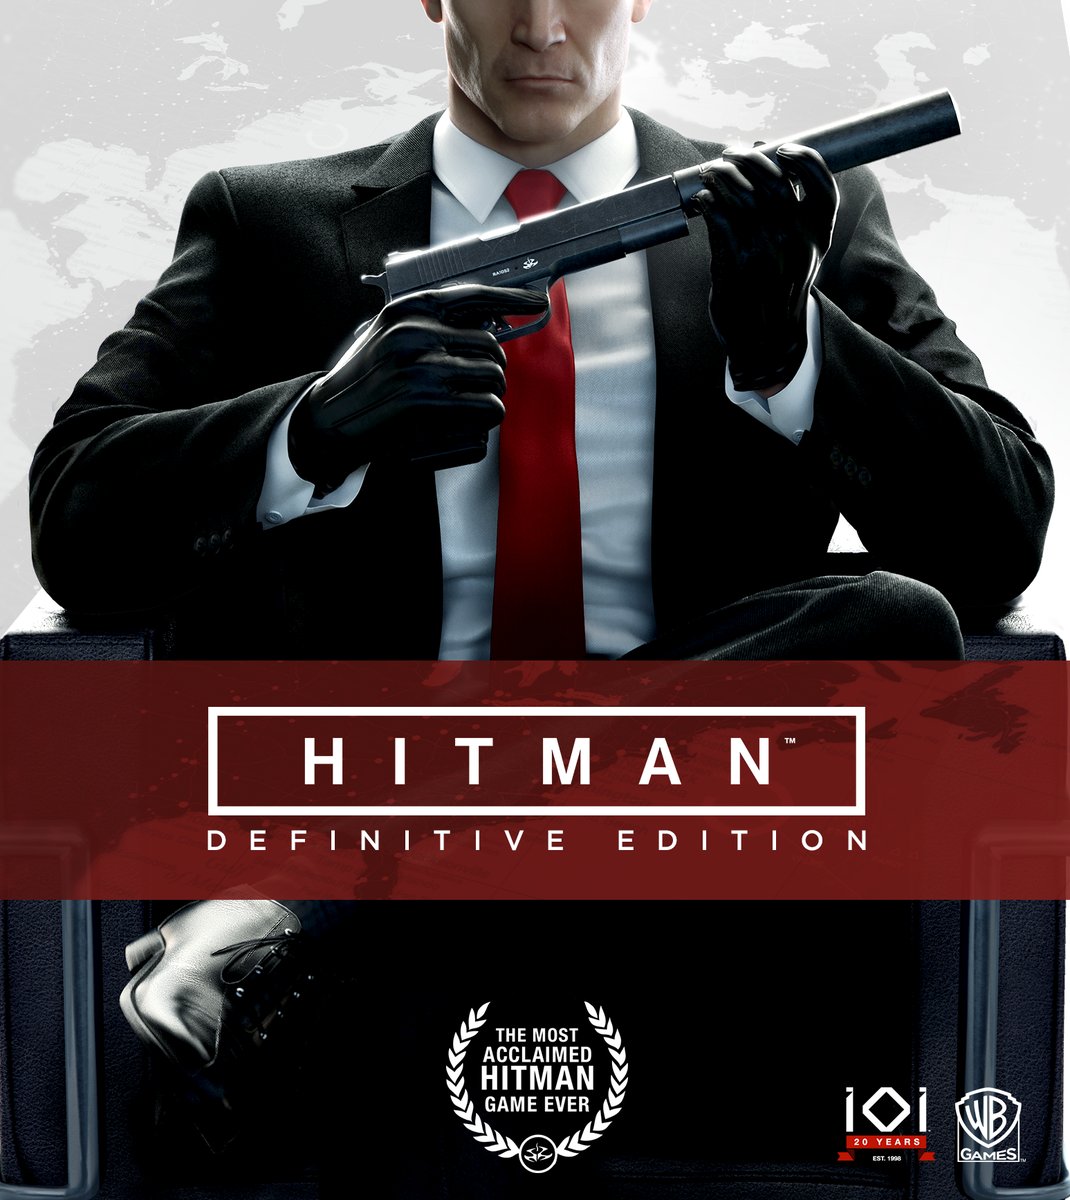 Warner Bros lanzará Hitman: Definitive Edition el próximo 18 de mayo para PS4 y Xbox One